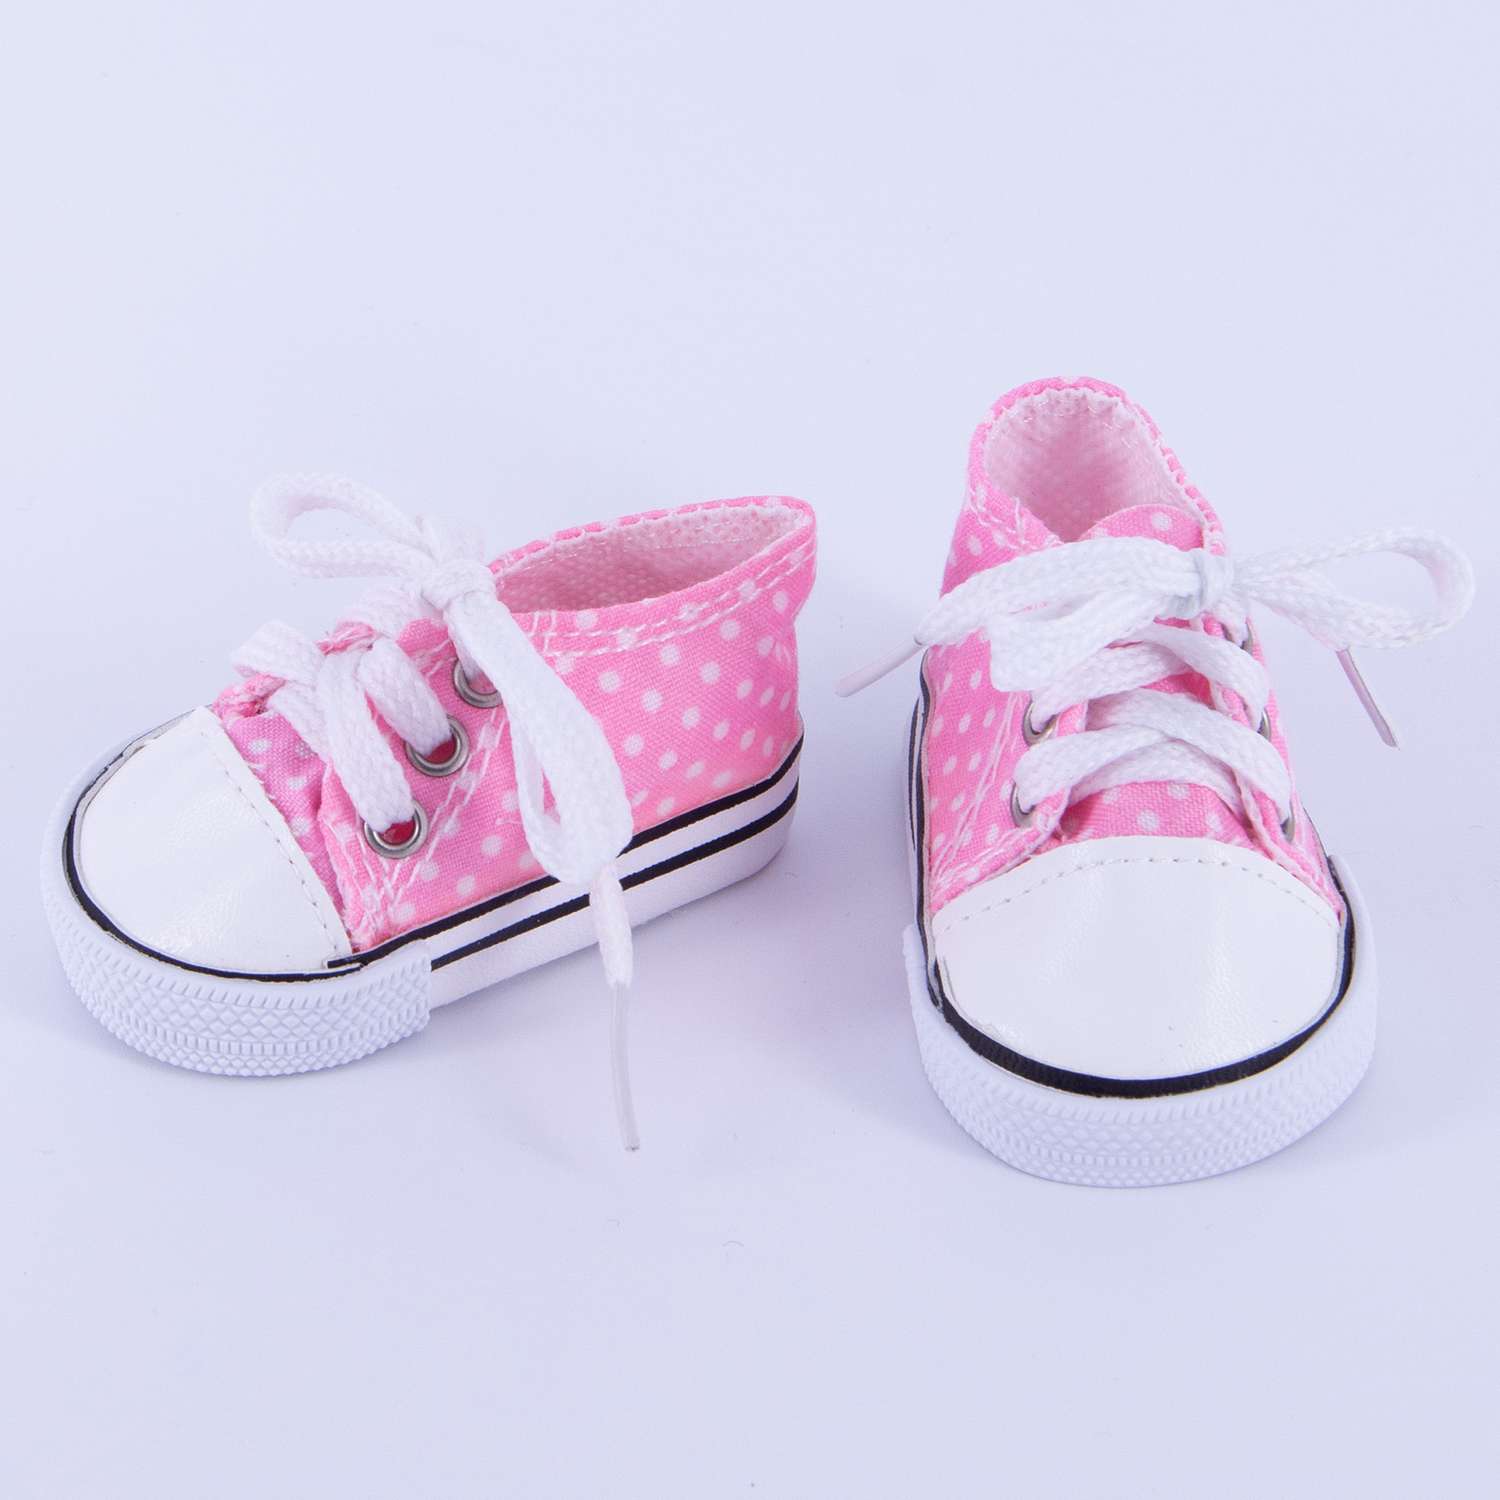 Обувь Модница для пупса 43-48 см 6150 розовый-белый 6150розовый-белый - фото 2